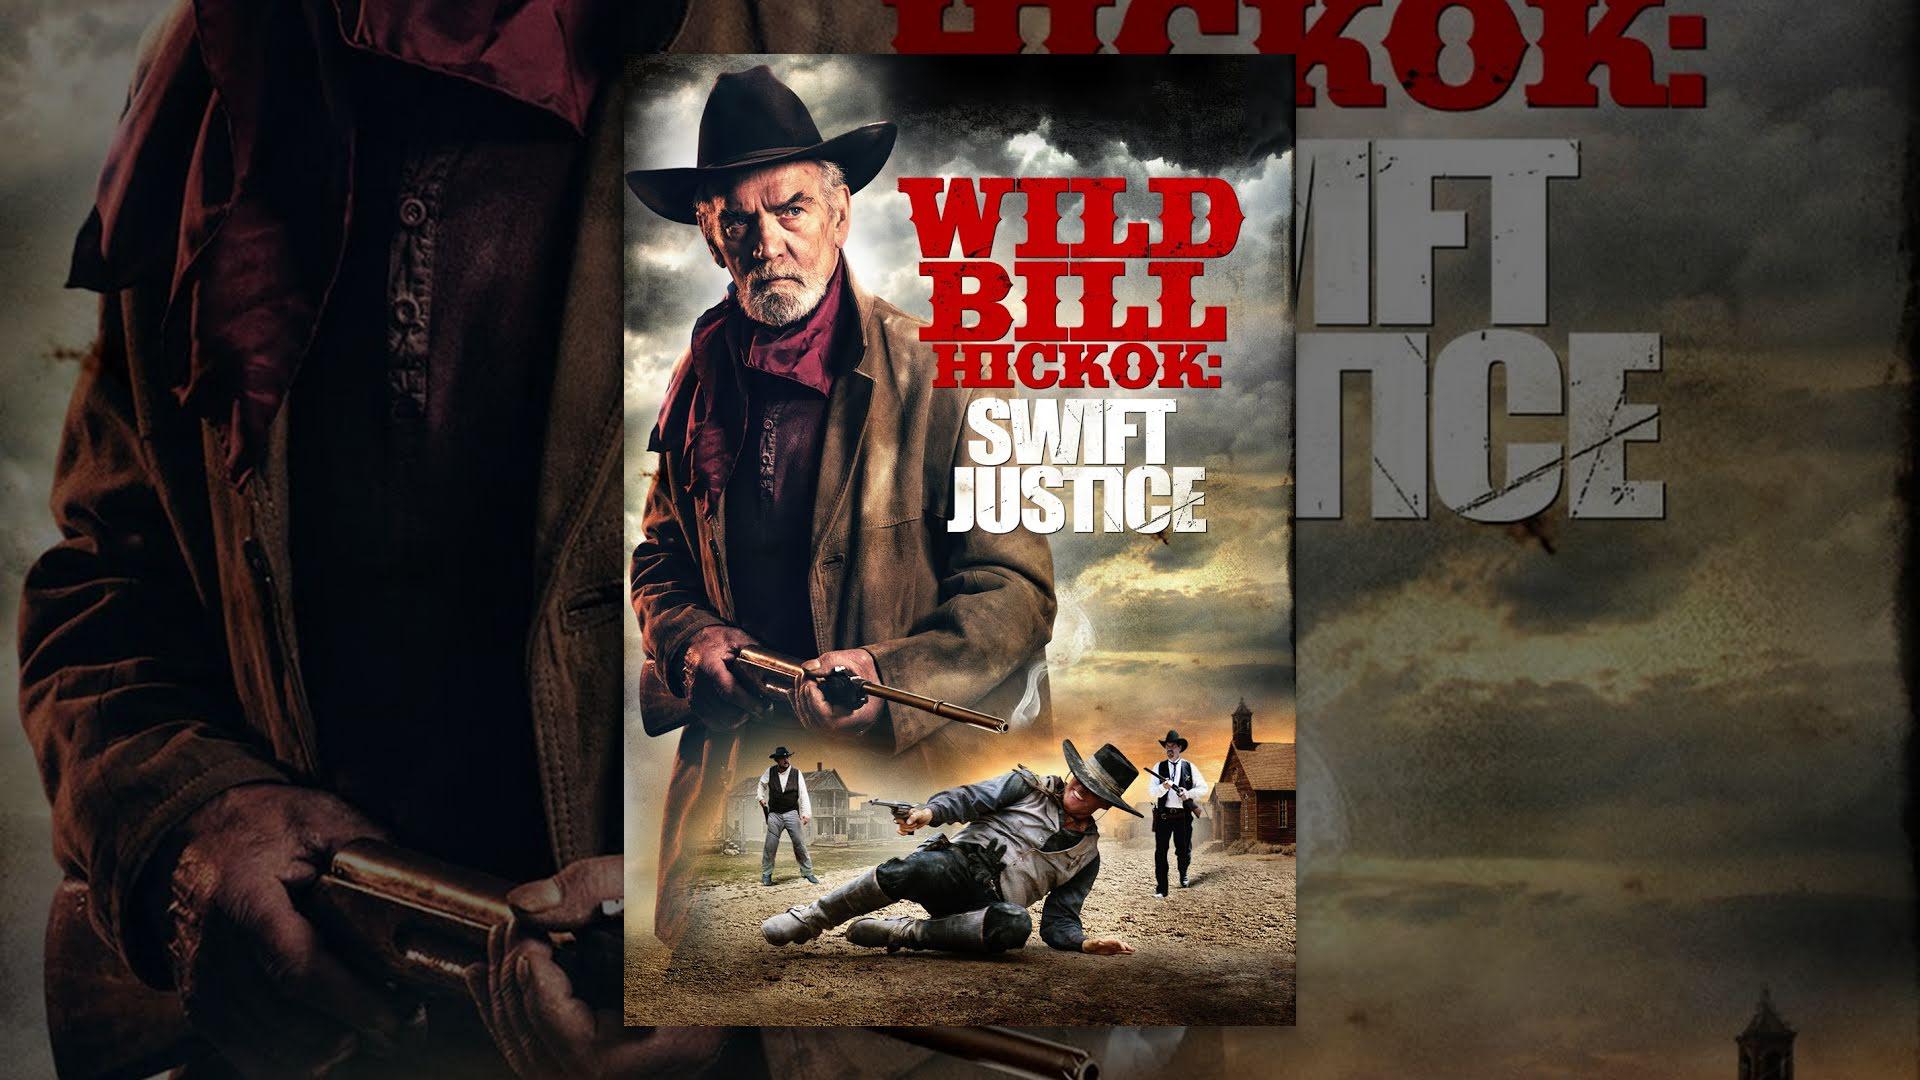 مشاهدة فيلم Wild Bill Hickok: Swift Justice 2015 مترجم HD اون لاين